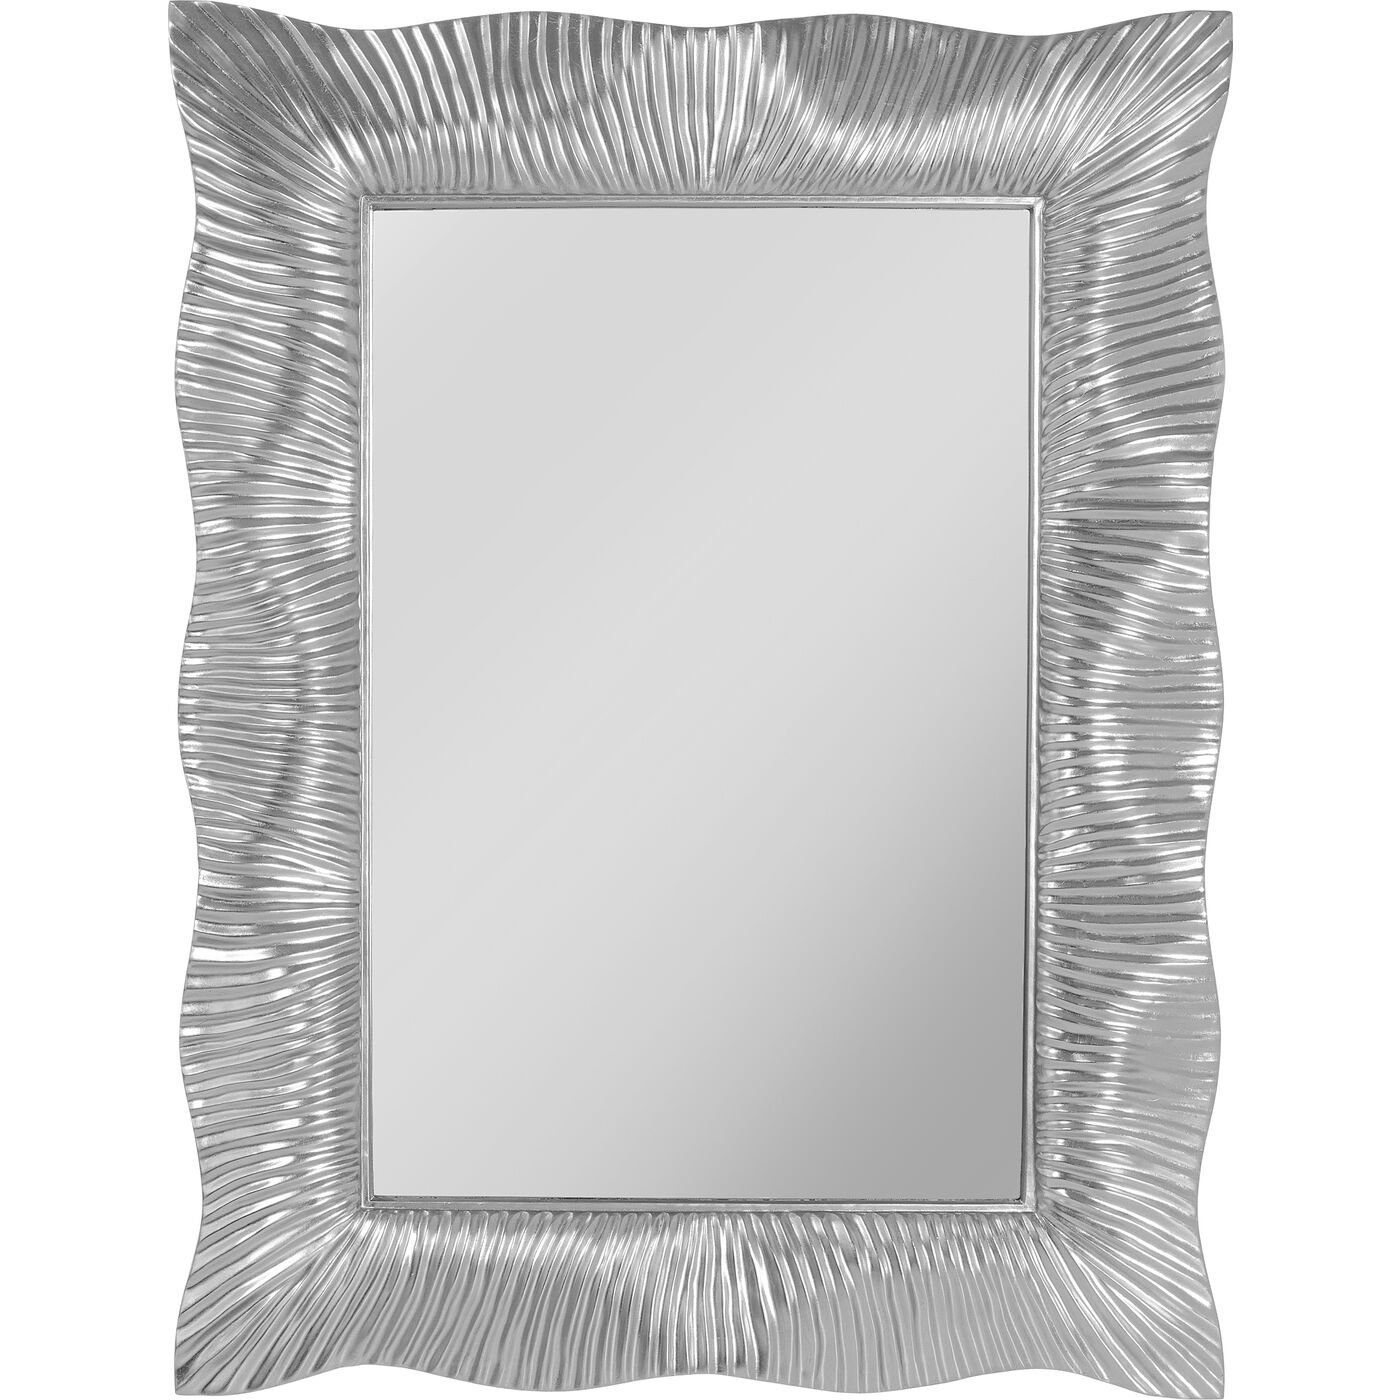 KARE Dekospiegel »Wandspiegel Wavy Silber 94x124cm« online kaufen | OTTO